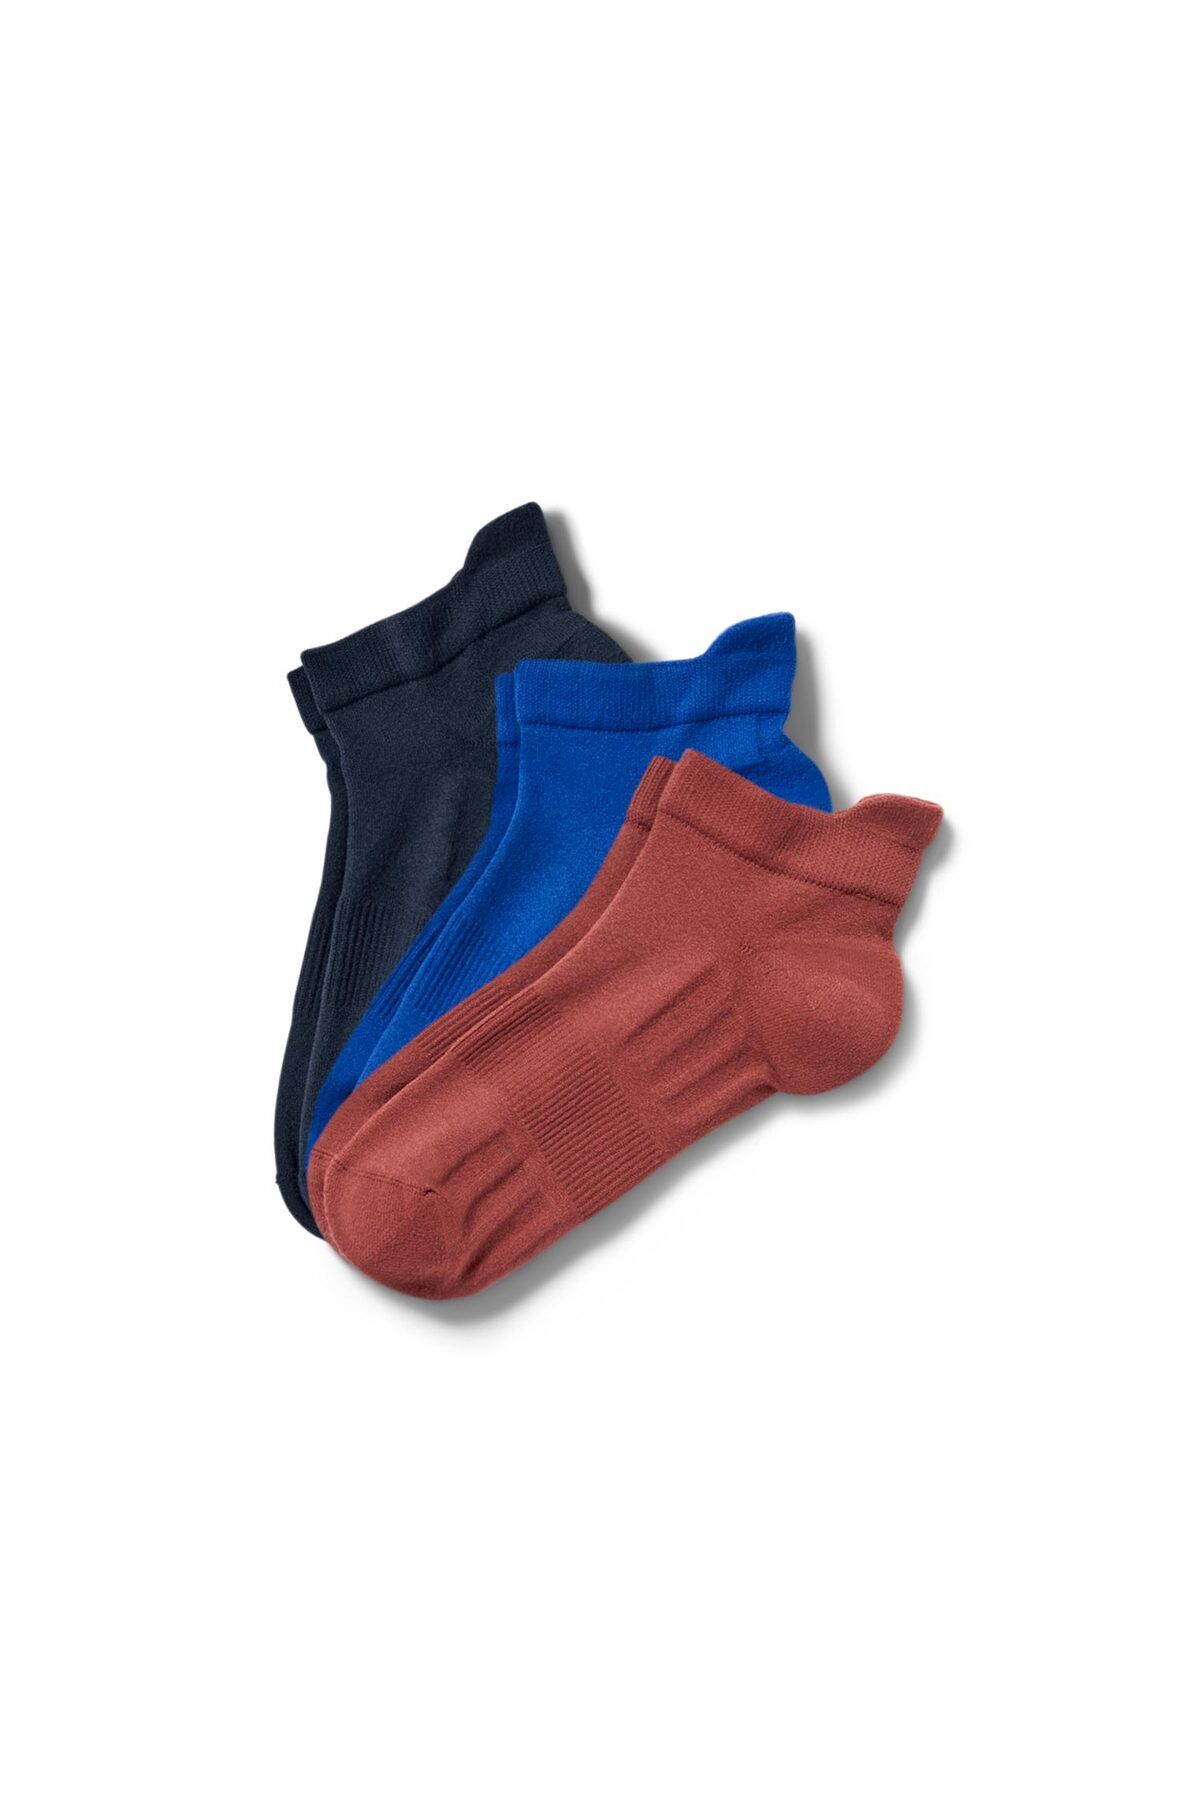 Tchibo 3 Çift Üniseks Profesyonel Koşu Çorabı, mavi ve kiremit renkleri